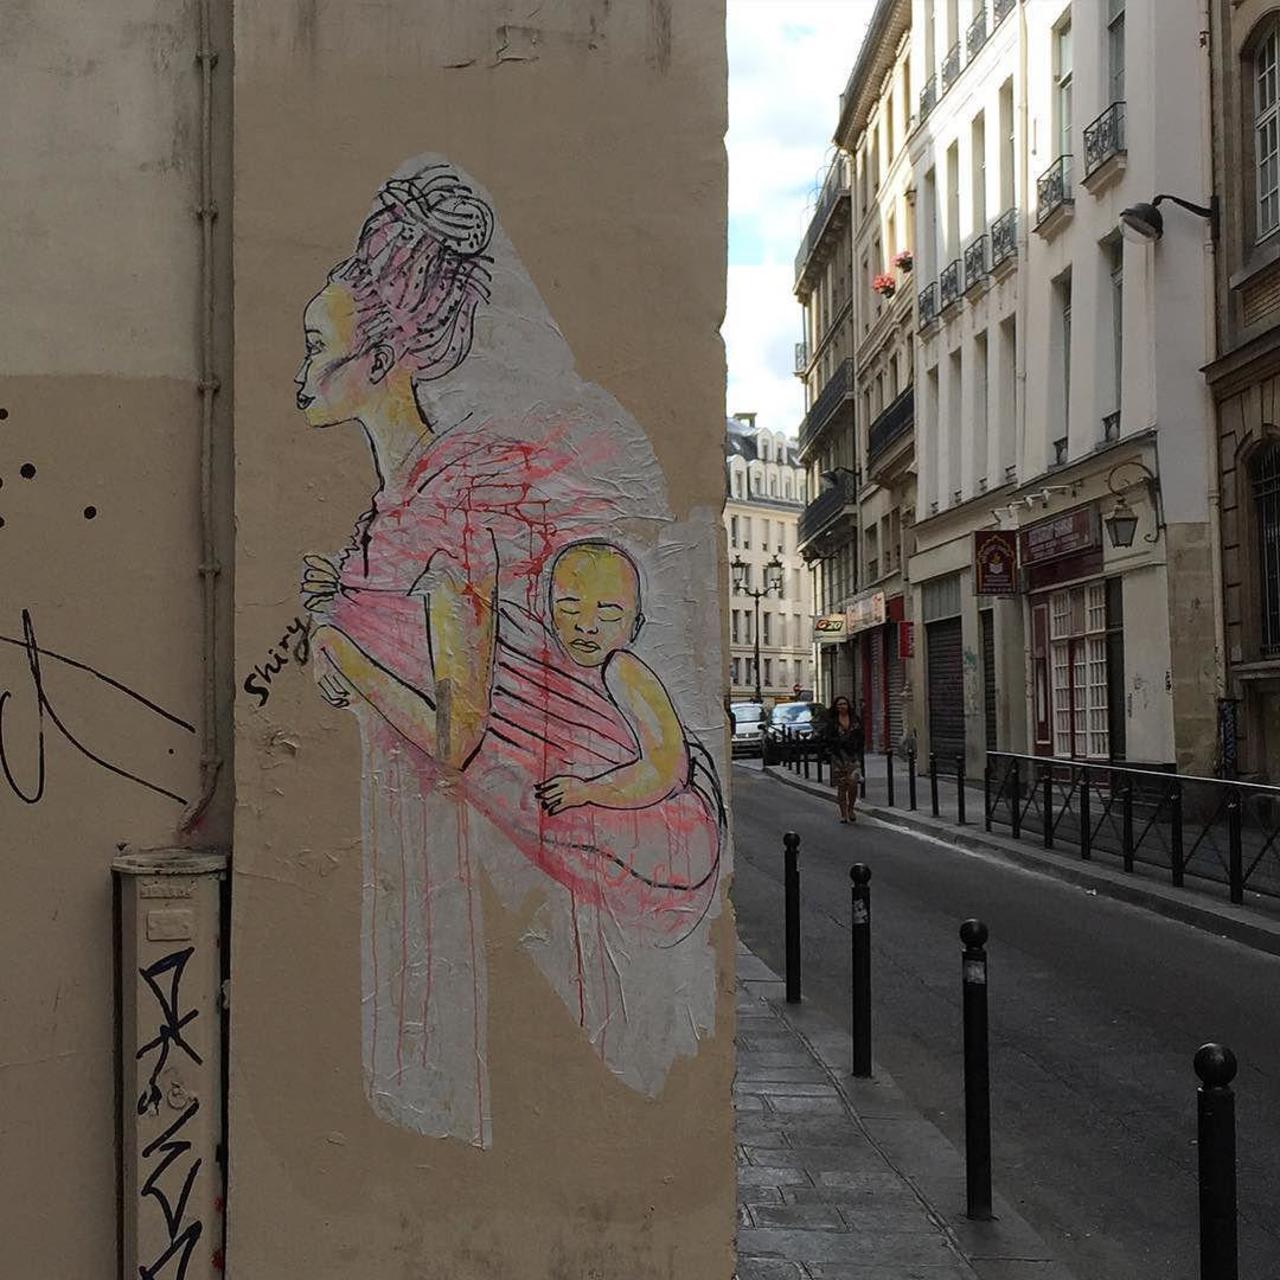 #Paris #graffiti photo by @ijustdontknow http://ift.tt/1VKNbc9 #StreetArt http://t.co/4Ej5Yf4uTC